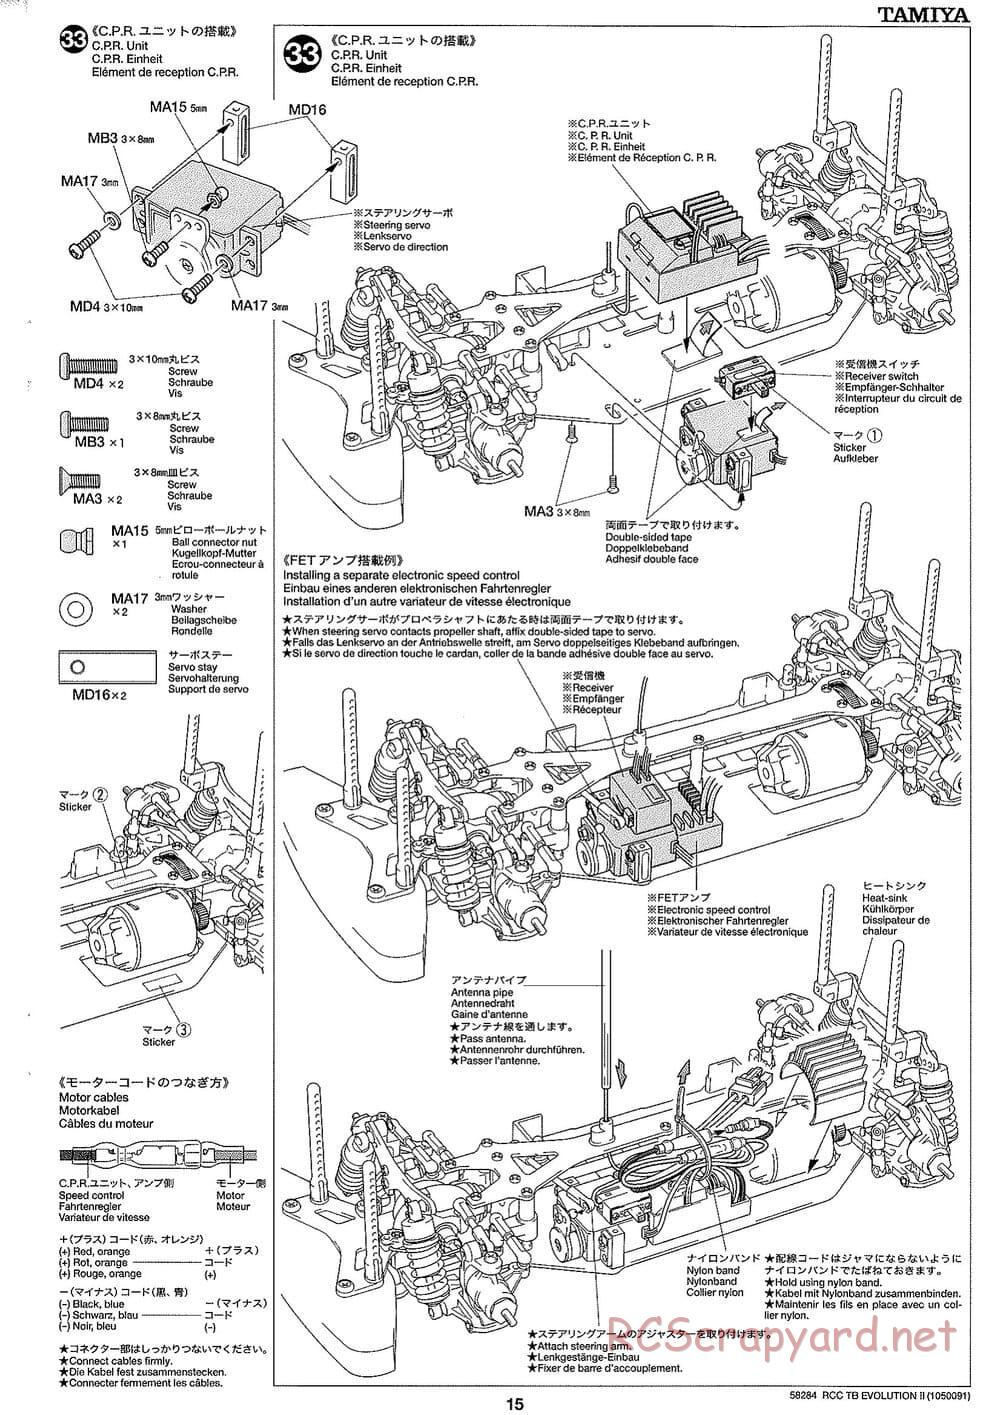 Tamiya - TB Evolution II Chassis - Manual - Page 15